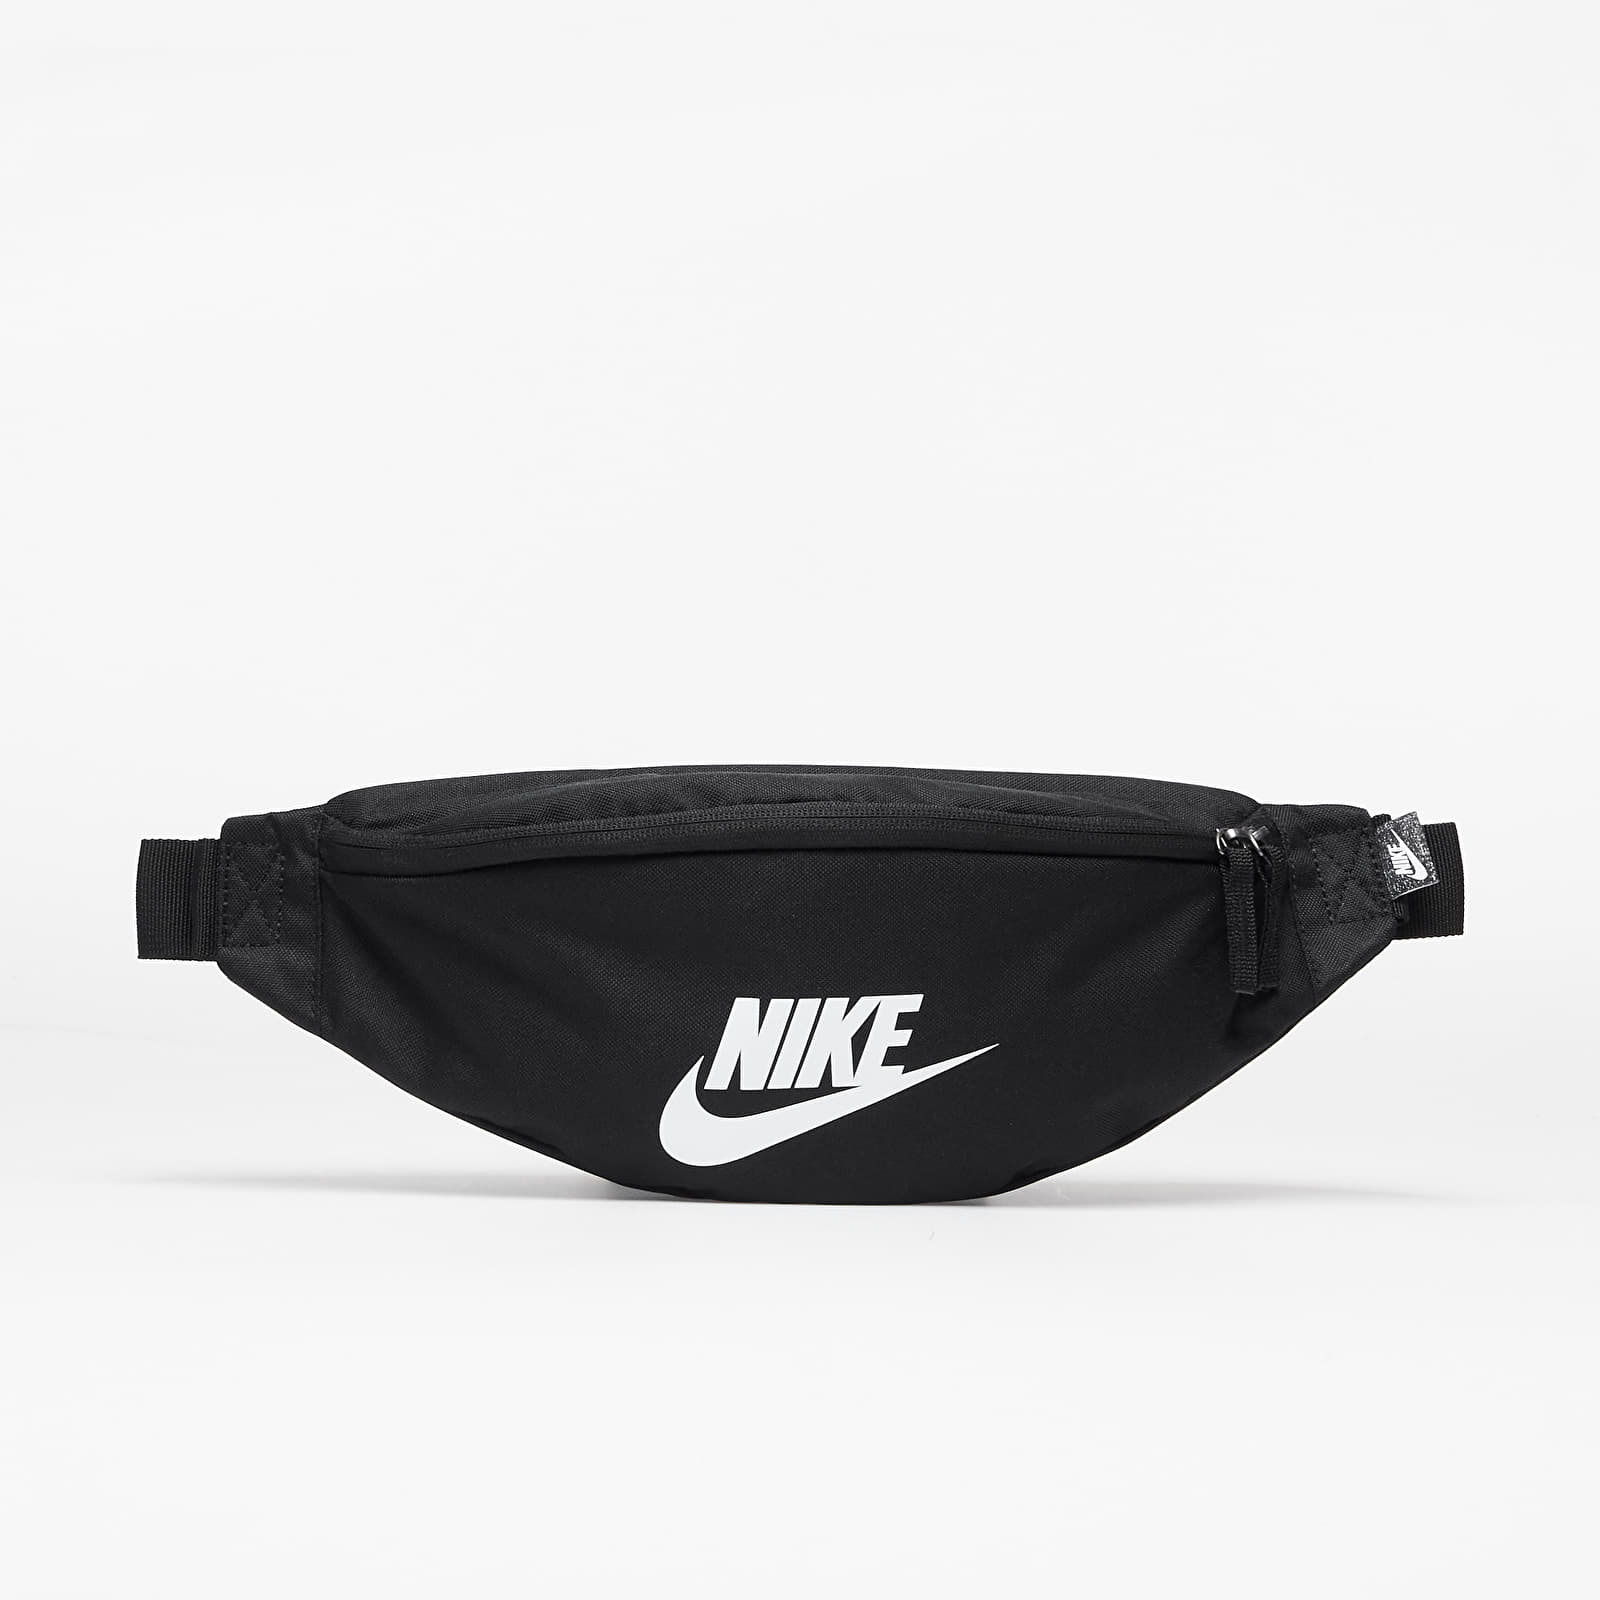 Nike - waistpack black/ black/ white